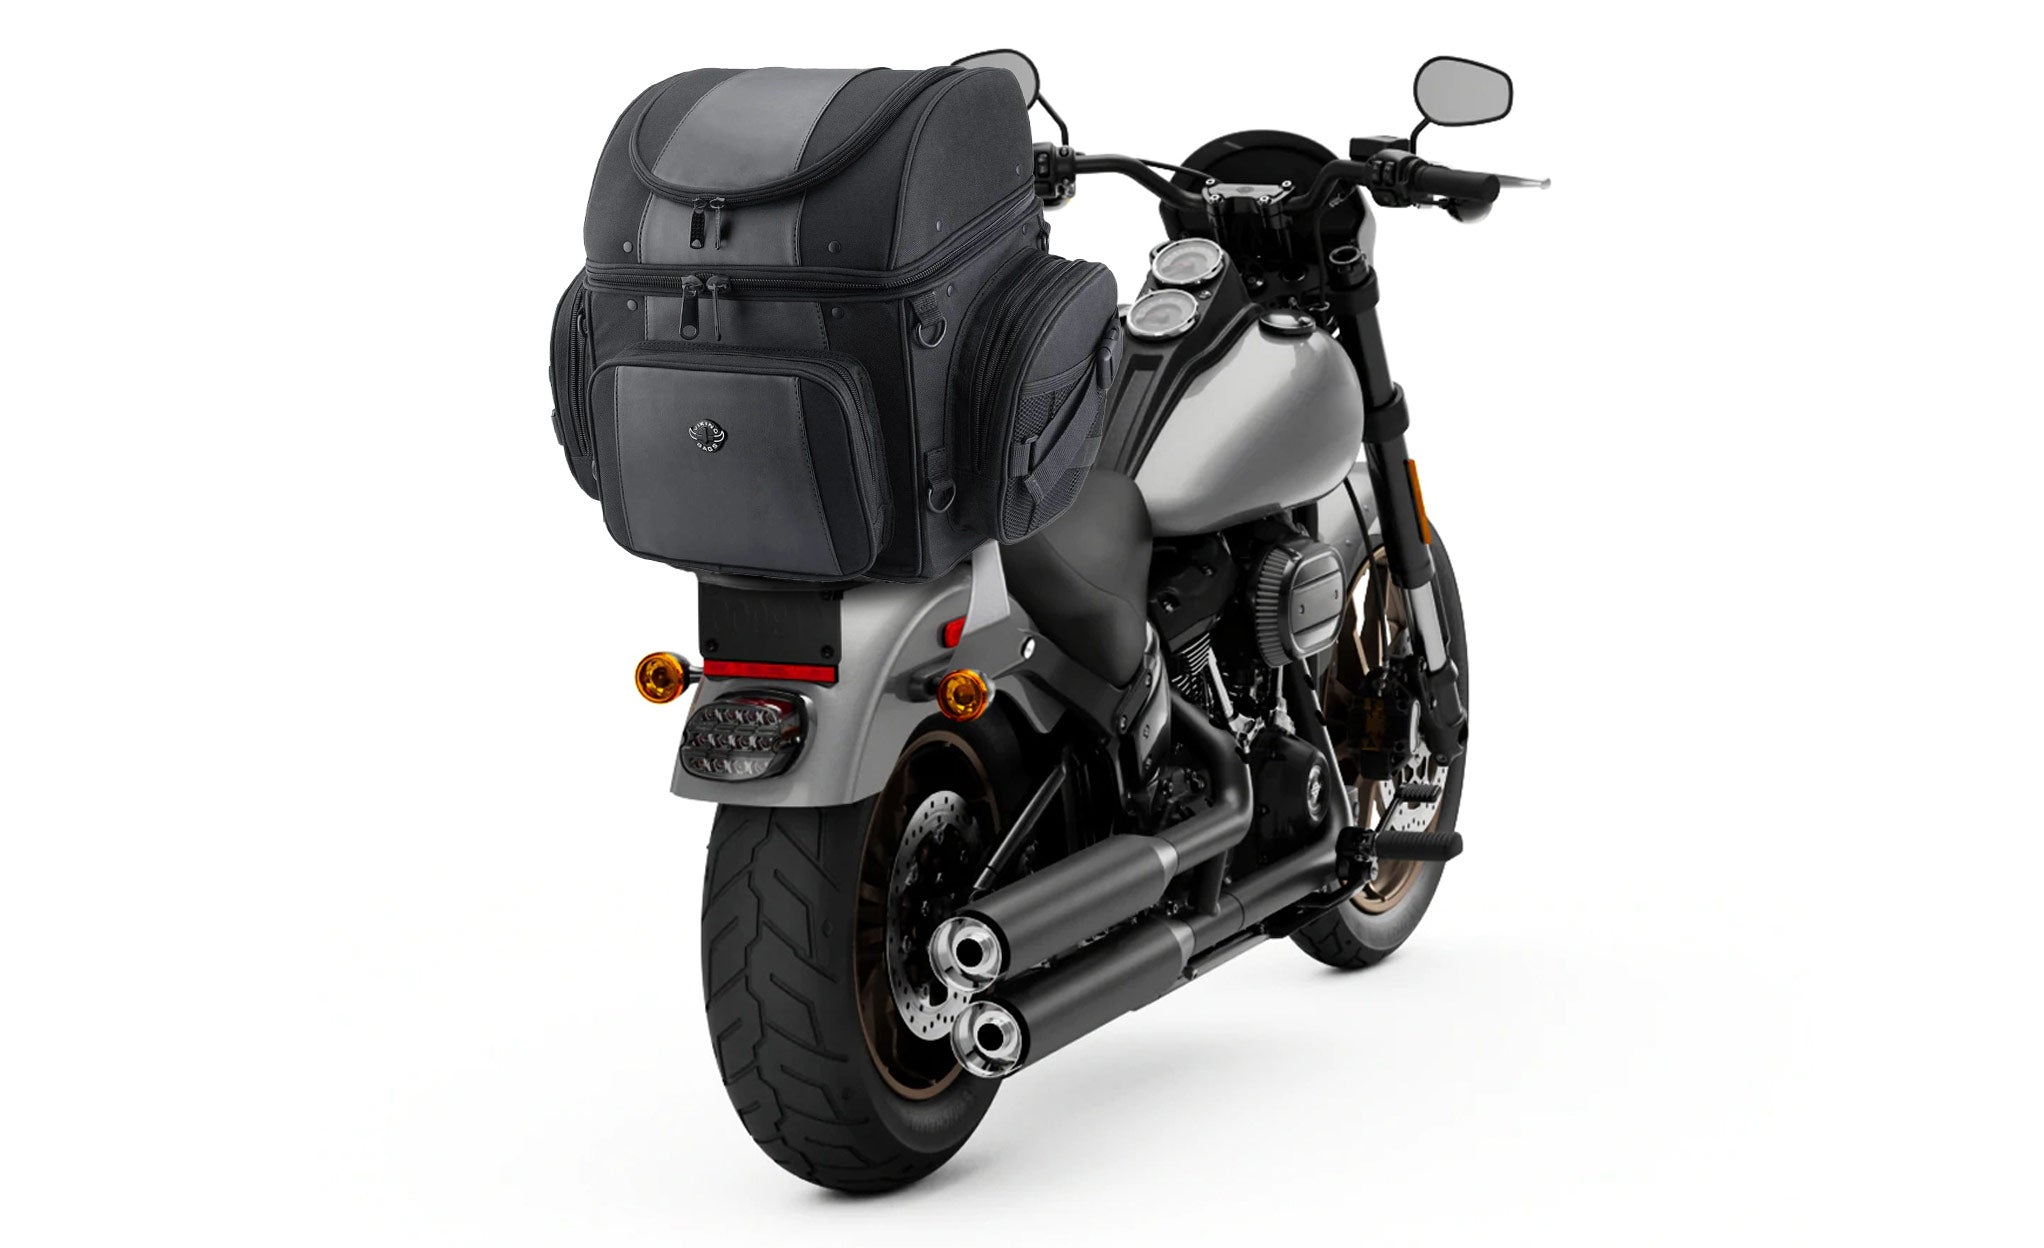 Viking Galleon Large Motorcycle Sissy Bar Bag Bag on Bike View @expand